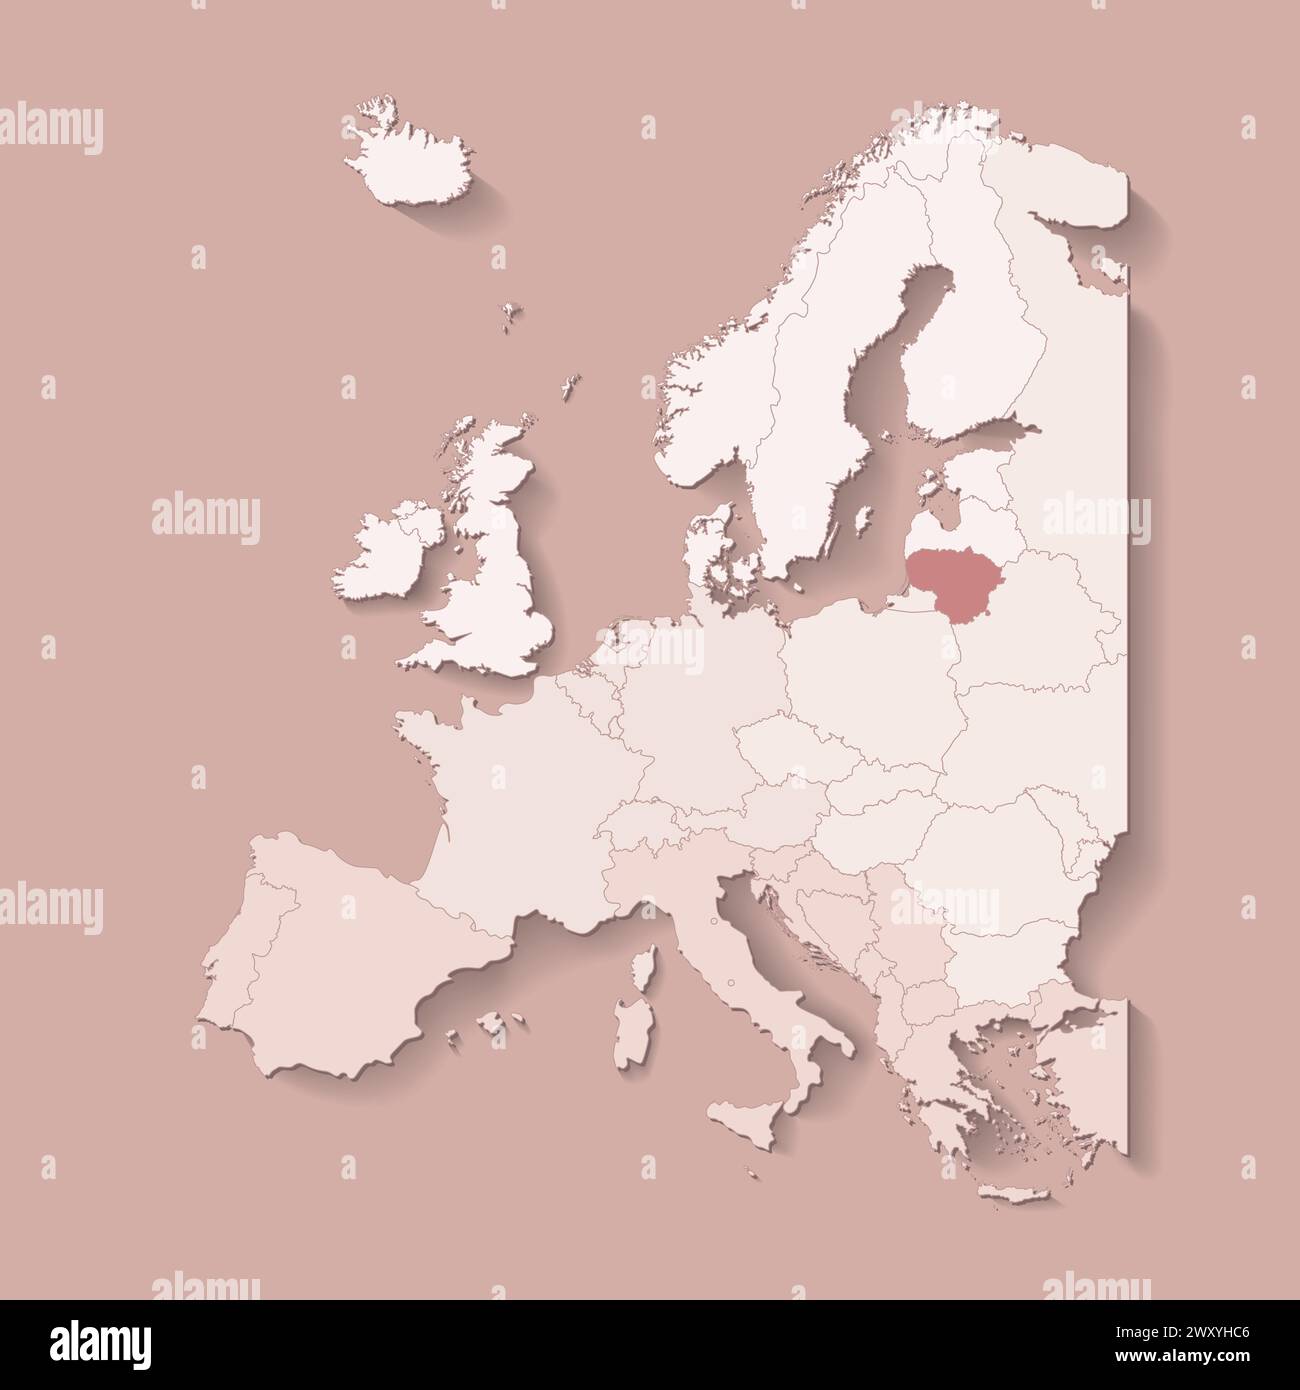 Illustrazione vettoriale con terra europea con confini di stati e paese contrassegnato Lituania. Mappa politica di colore marrone con occidentale, meridionale e così via Illustrazione Vettoriale